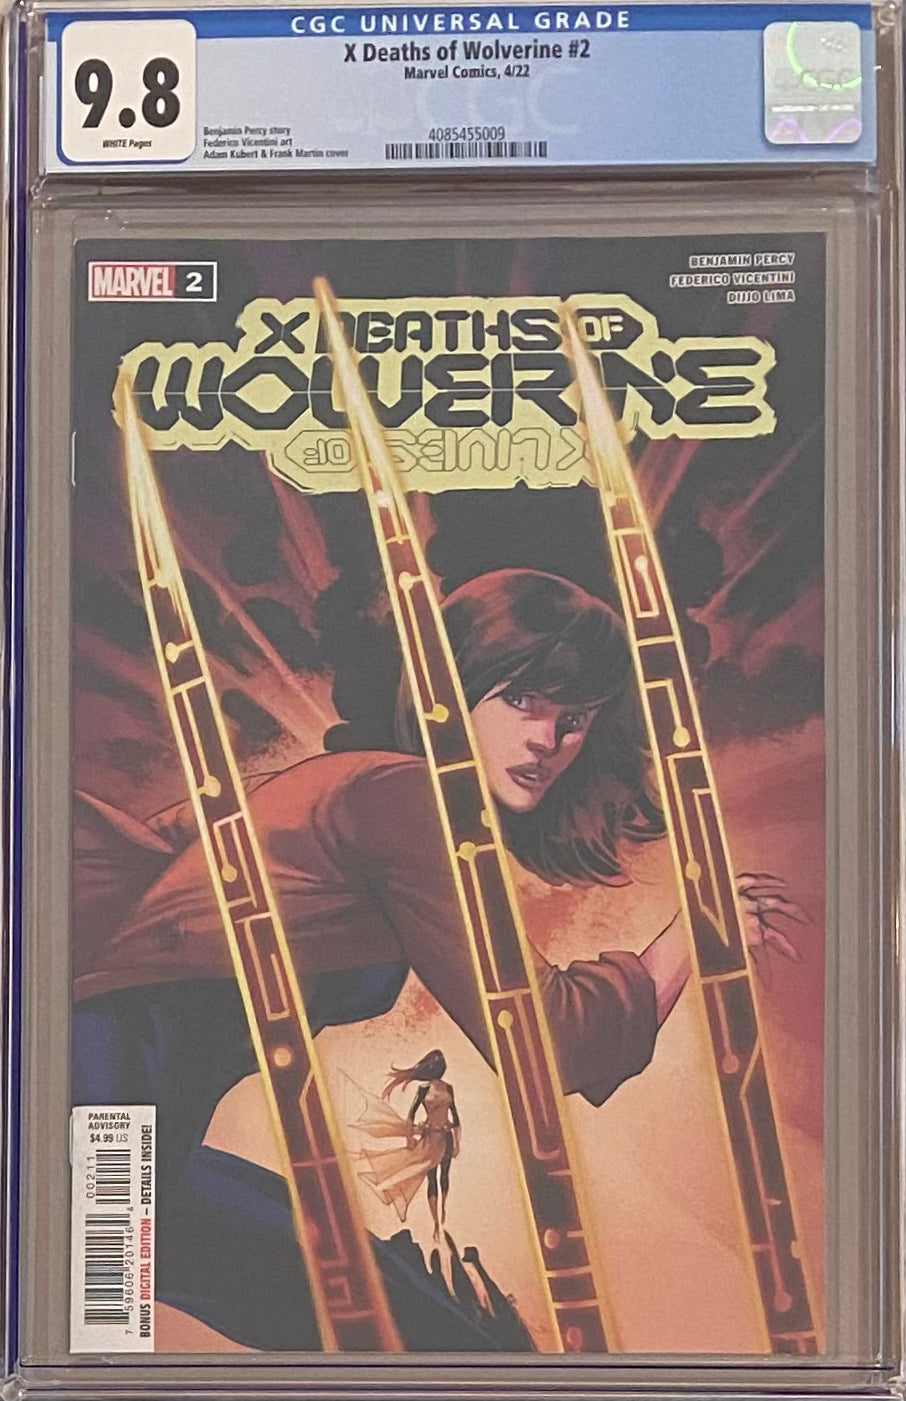 X Deaths of Wolverine #2 CGC 9.8